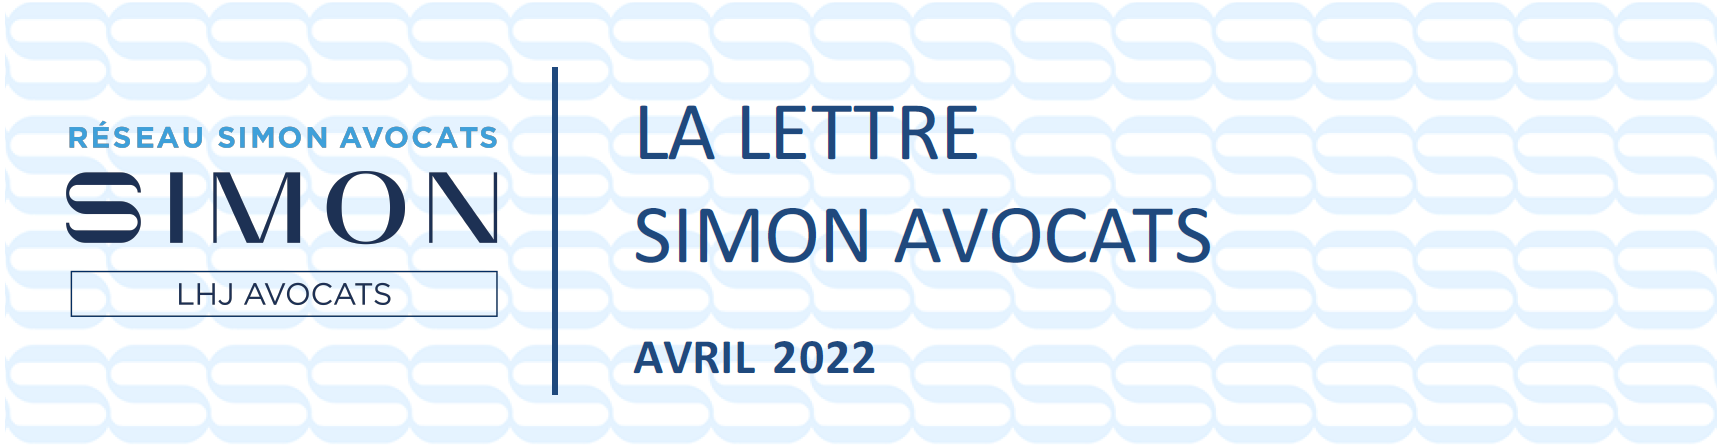  LA LETTRE DU RÉSEAU - SIMON AVOCATS - ACTUALITÉS JURIDIQUES AVRIL 2022